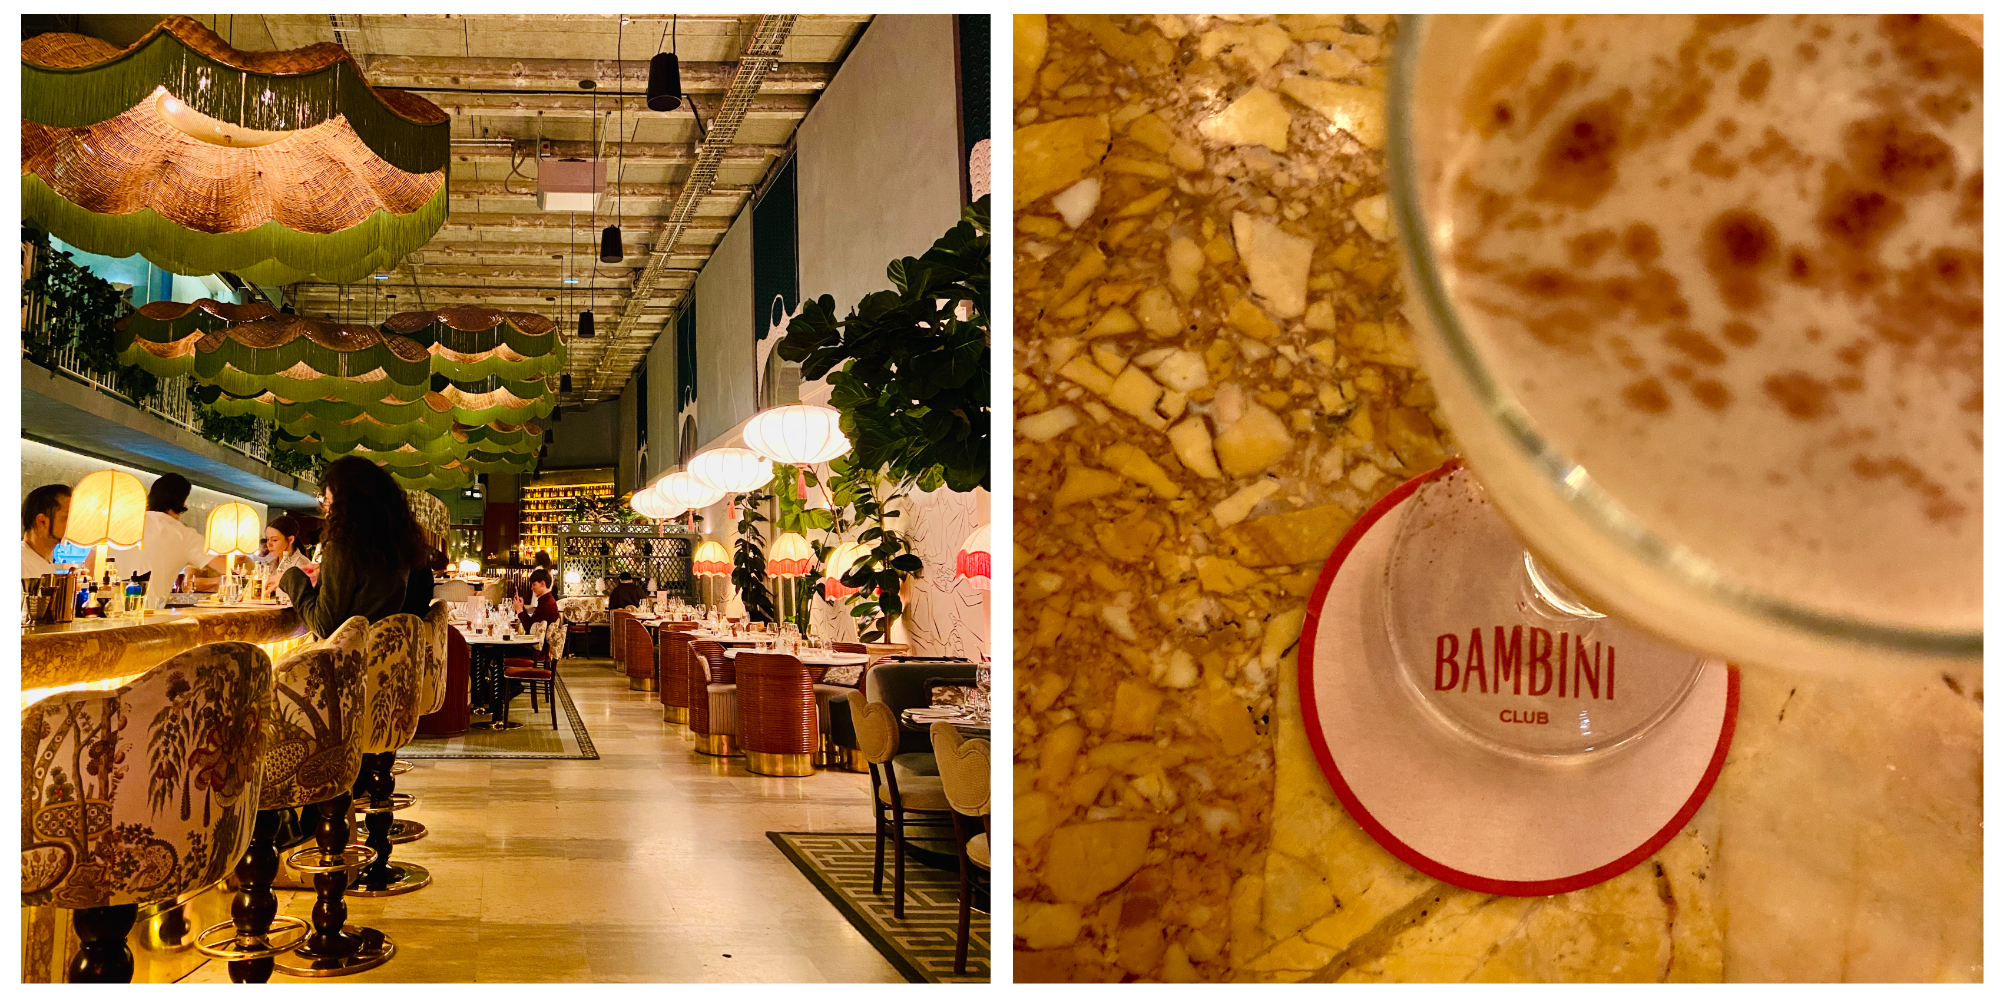 εστιατόριο μπαρ παρίσι μουσείο τόκυο bambini restaurant paris tokyo museum